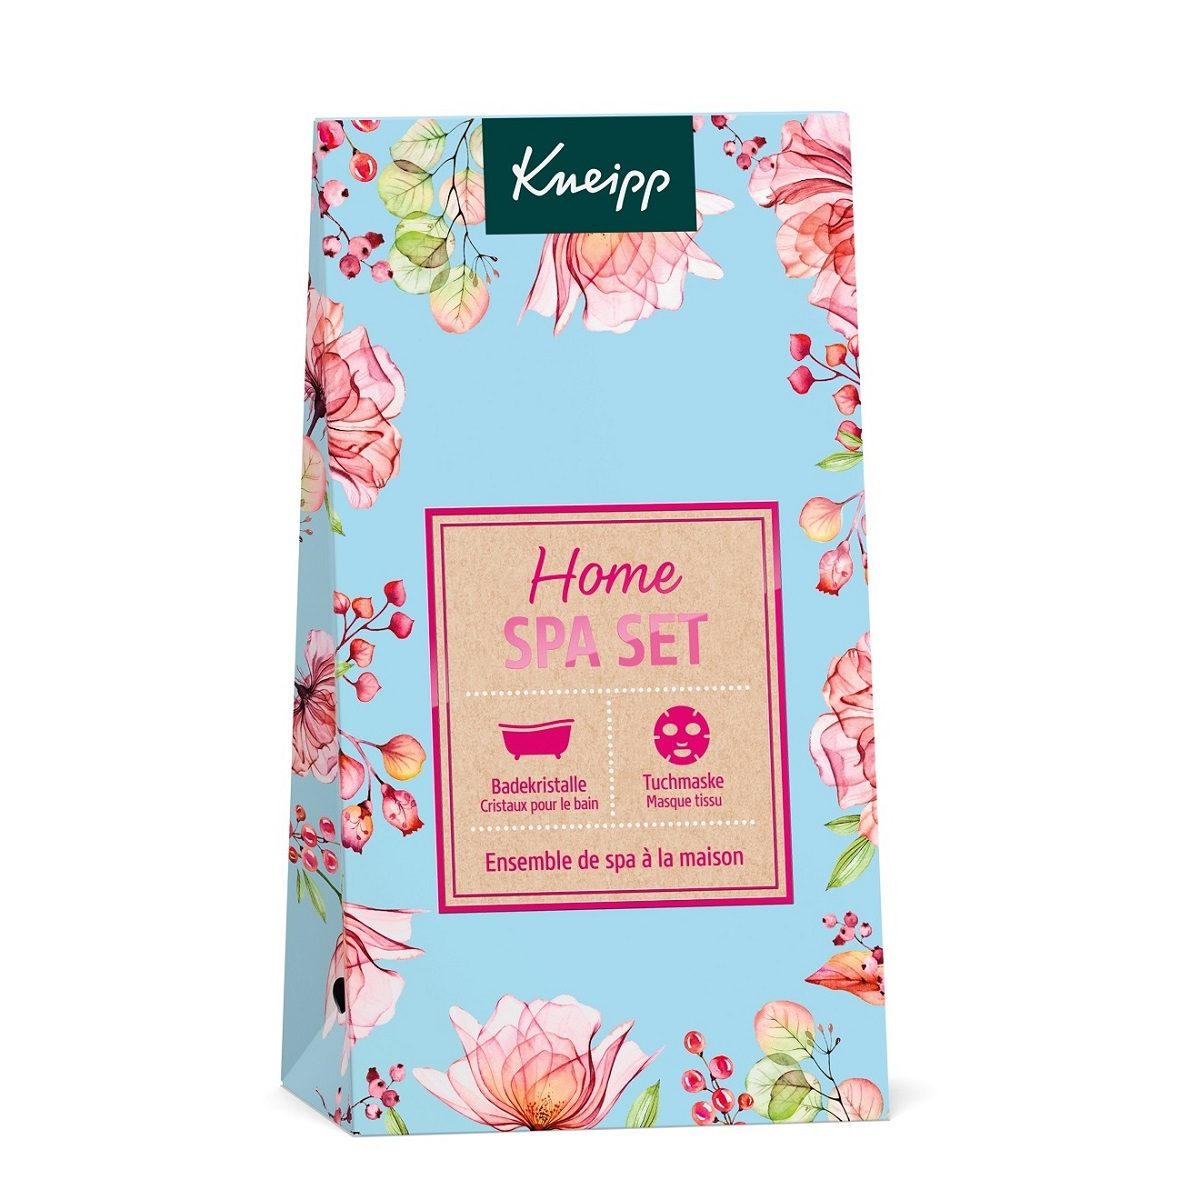 Kneipp Home Spa Set